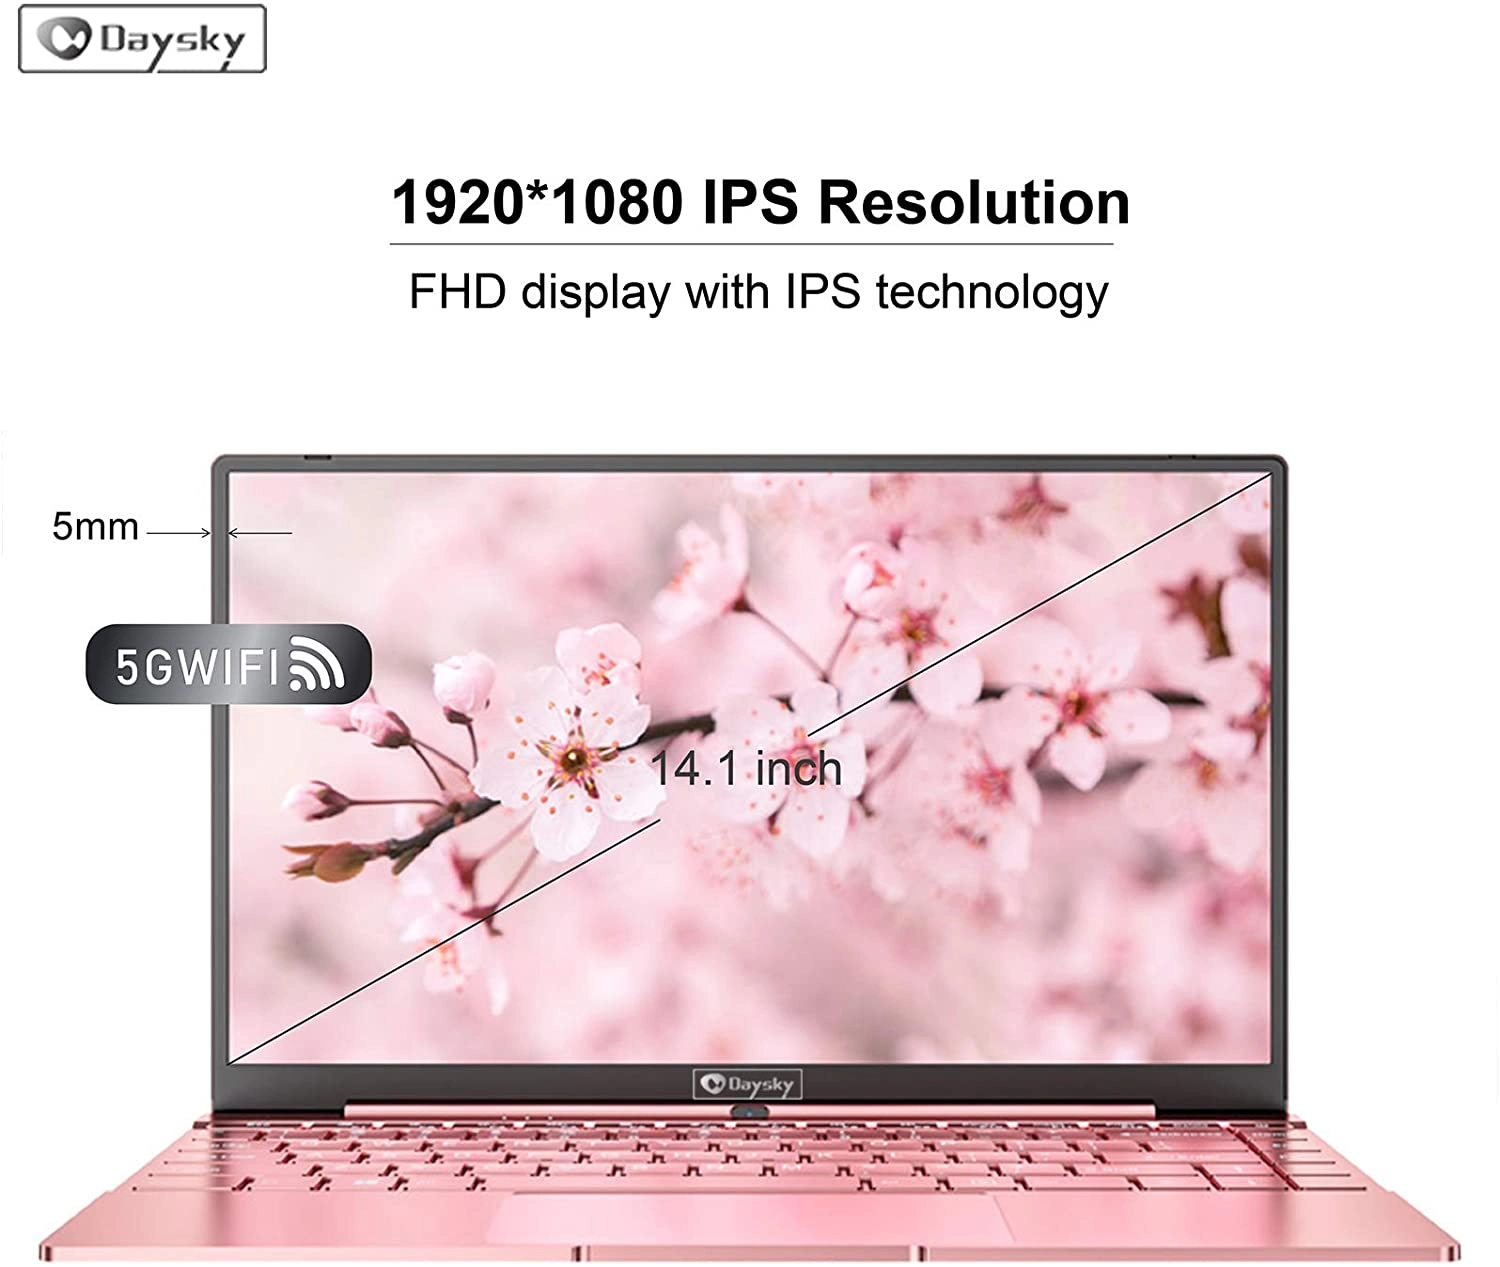 DaySky V14S laptop image